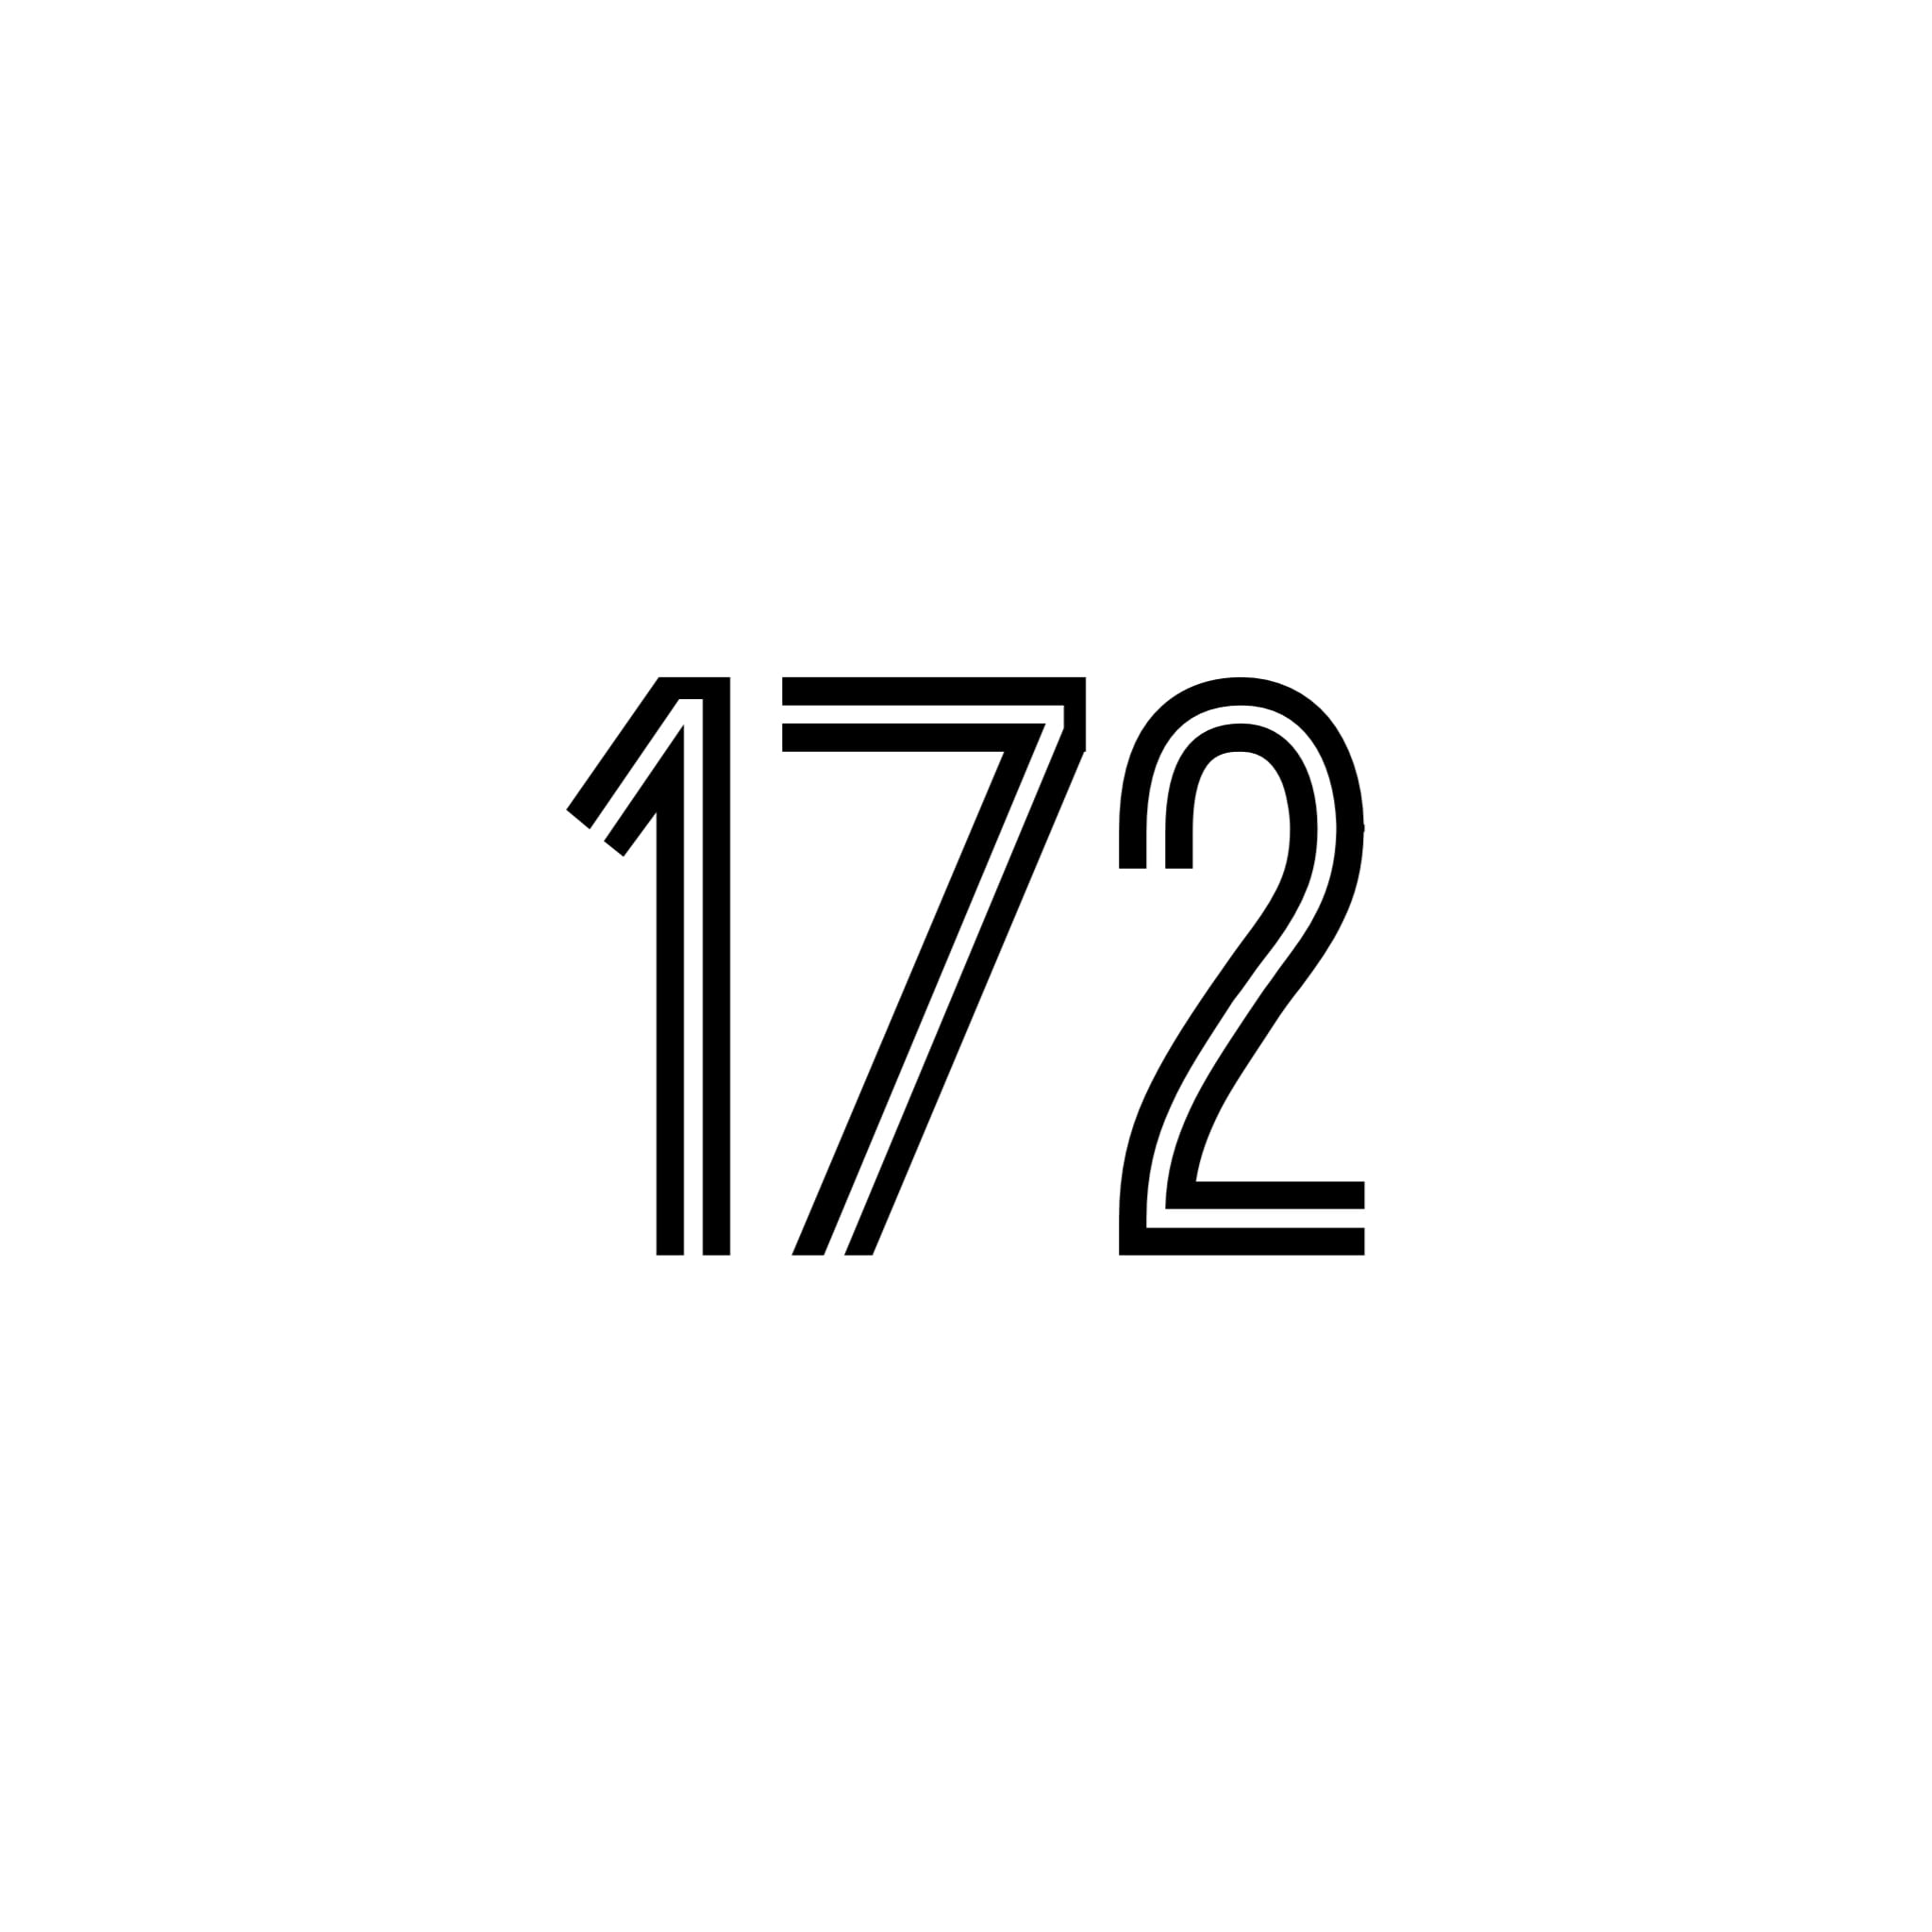 172